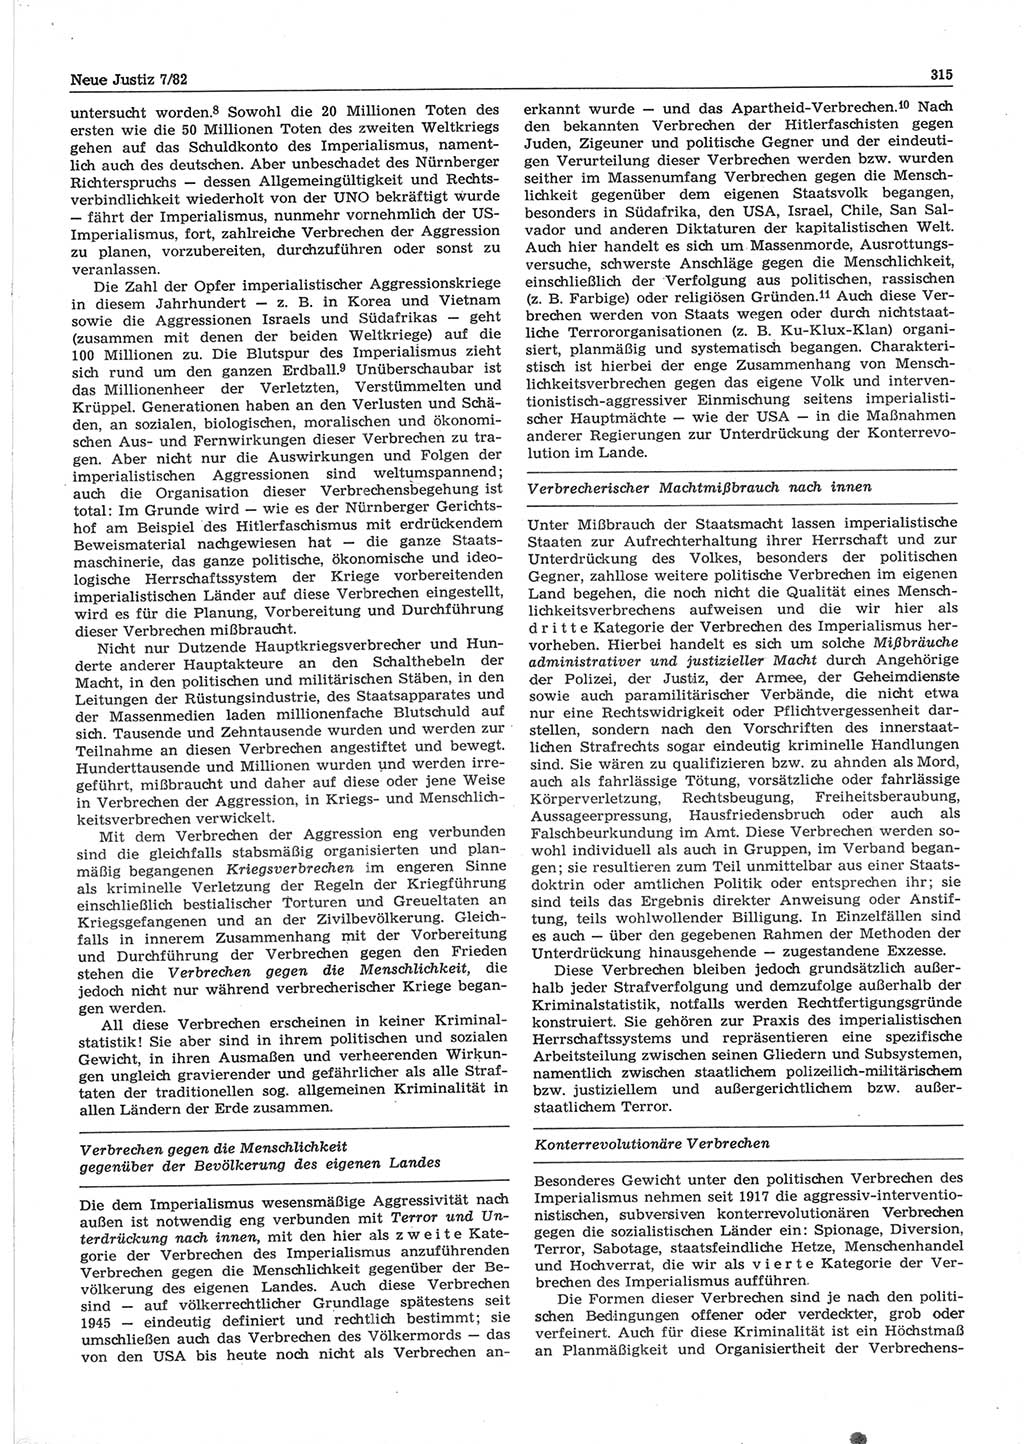 Neue Justiz (NJ), Zeitschrift für sozialistisches Recht und Gesetzlichkeit [Deutsche Demokratische Republik (DDR)], 36. Jahrgang 1982, Seite 315 (NJ DDR 1982, S. 315)